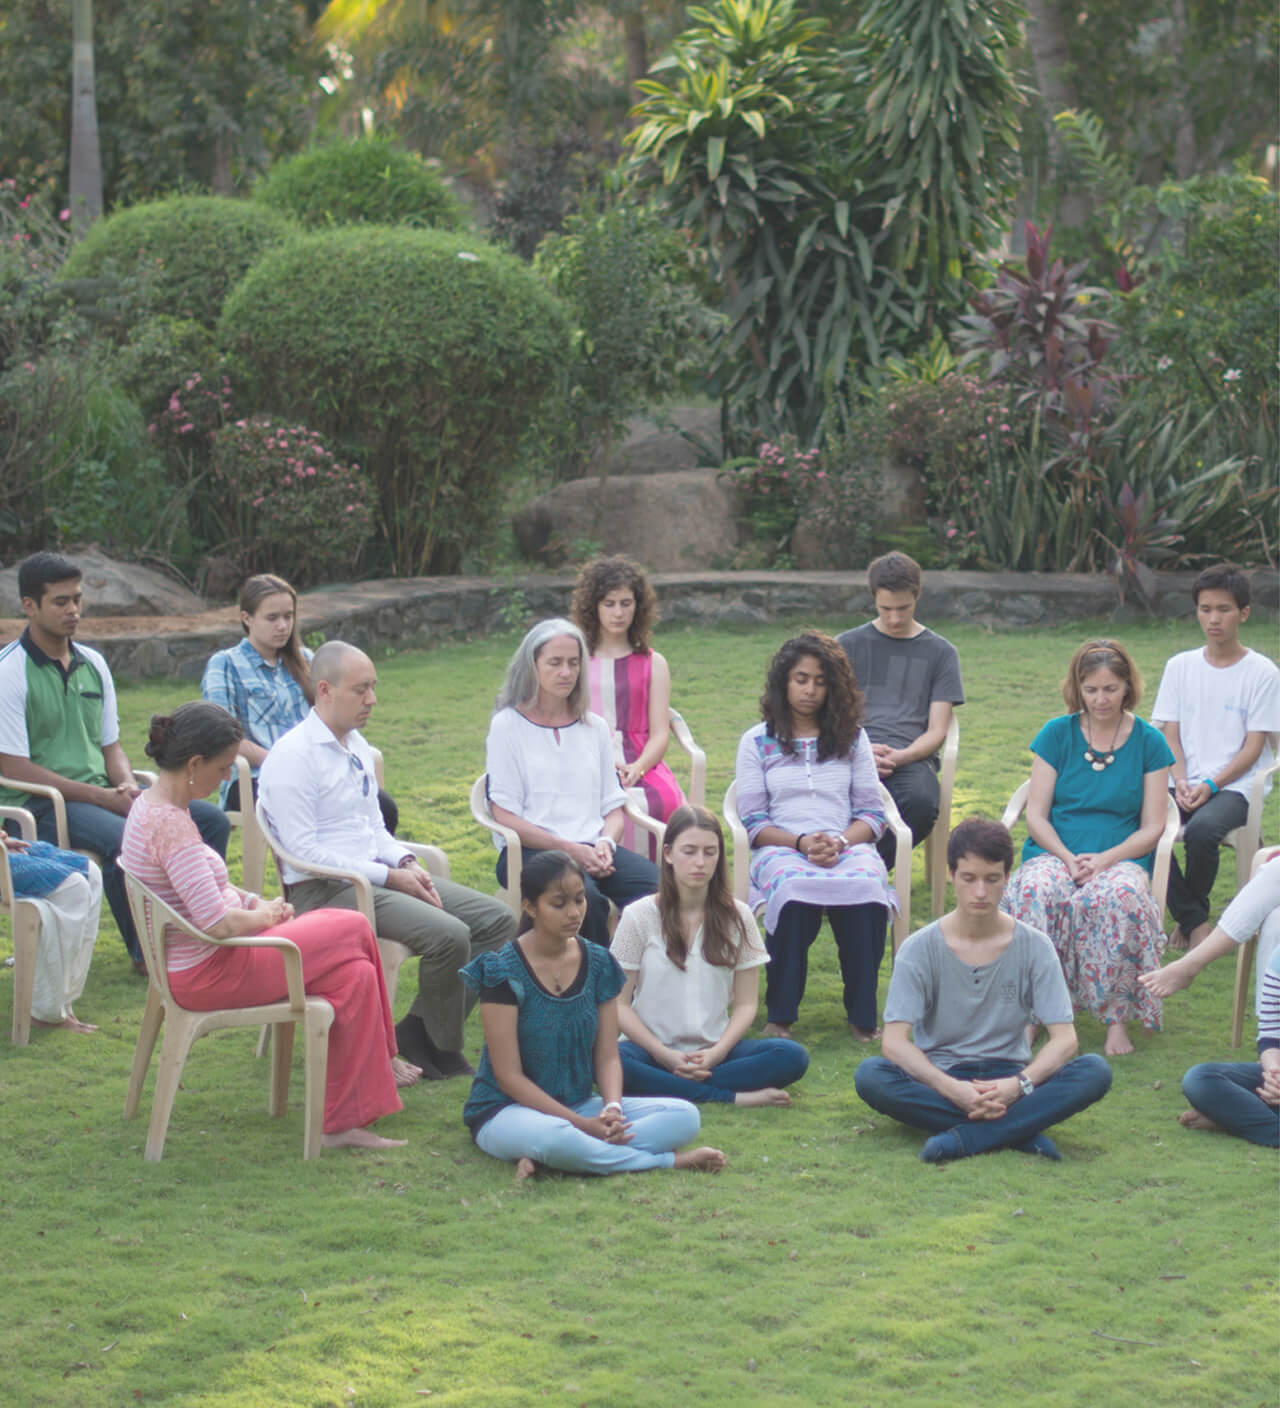 Meditierende aus der Heartfulness Community meditieren zusammen in einem Park.